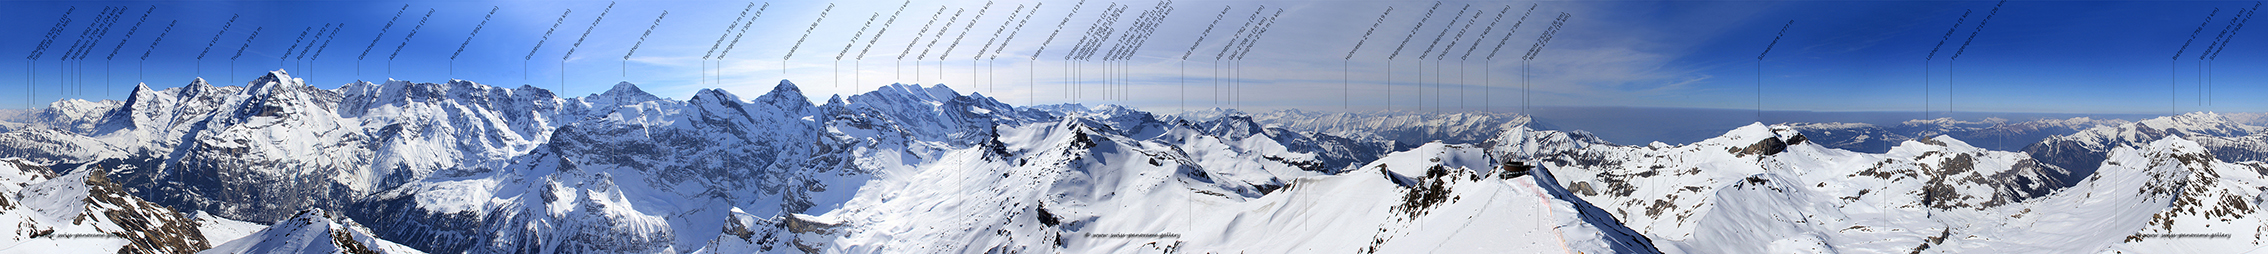 Switzerland Schilthorn panorama